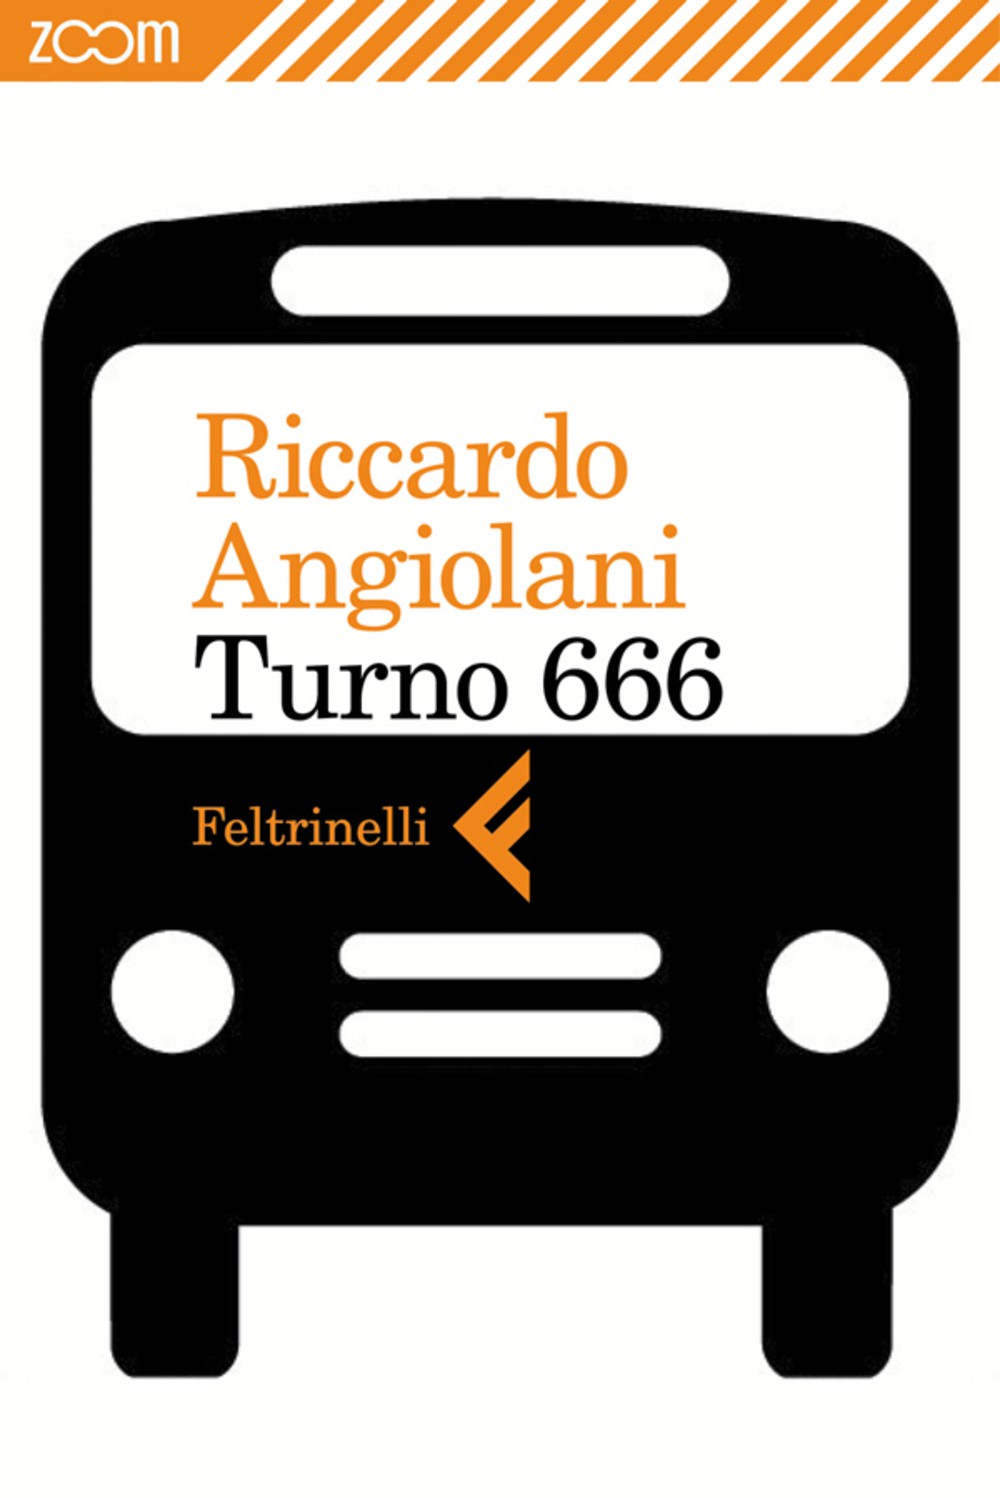 Storie di bus con “Turno 666”